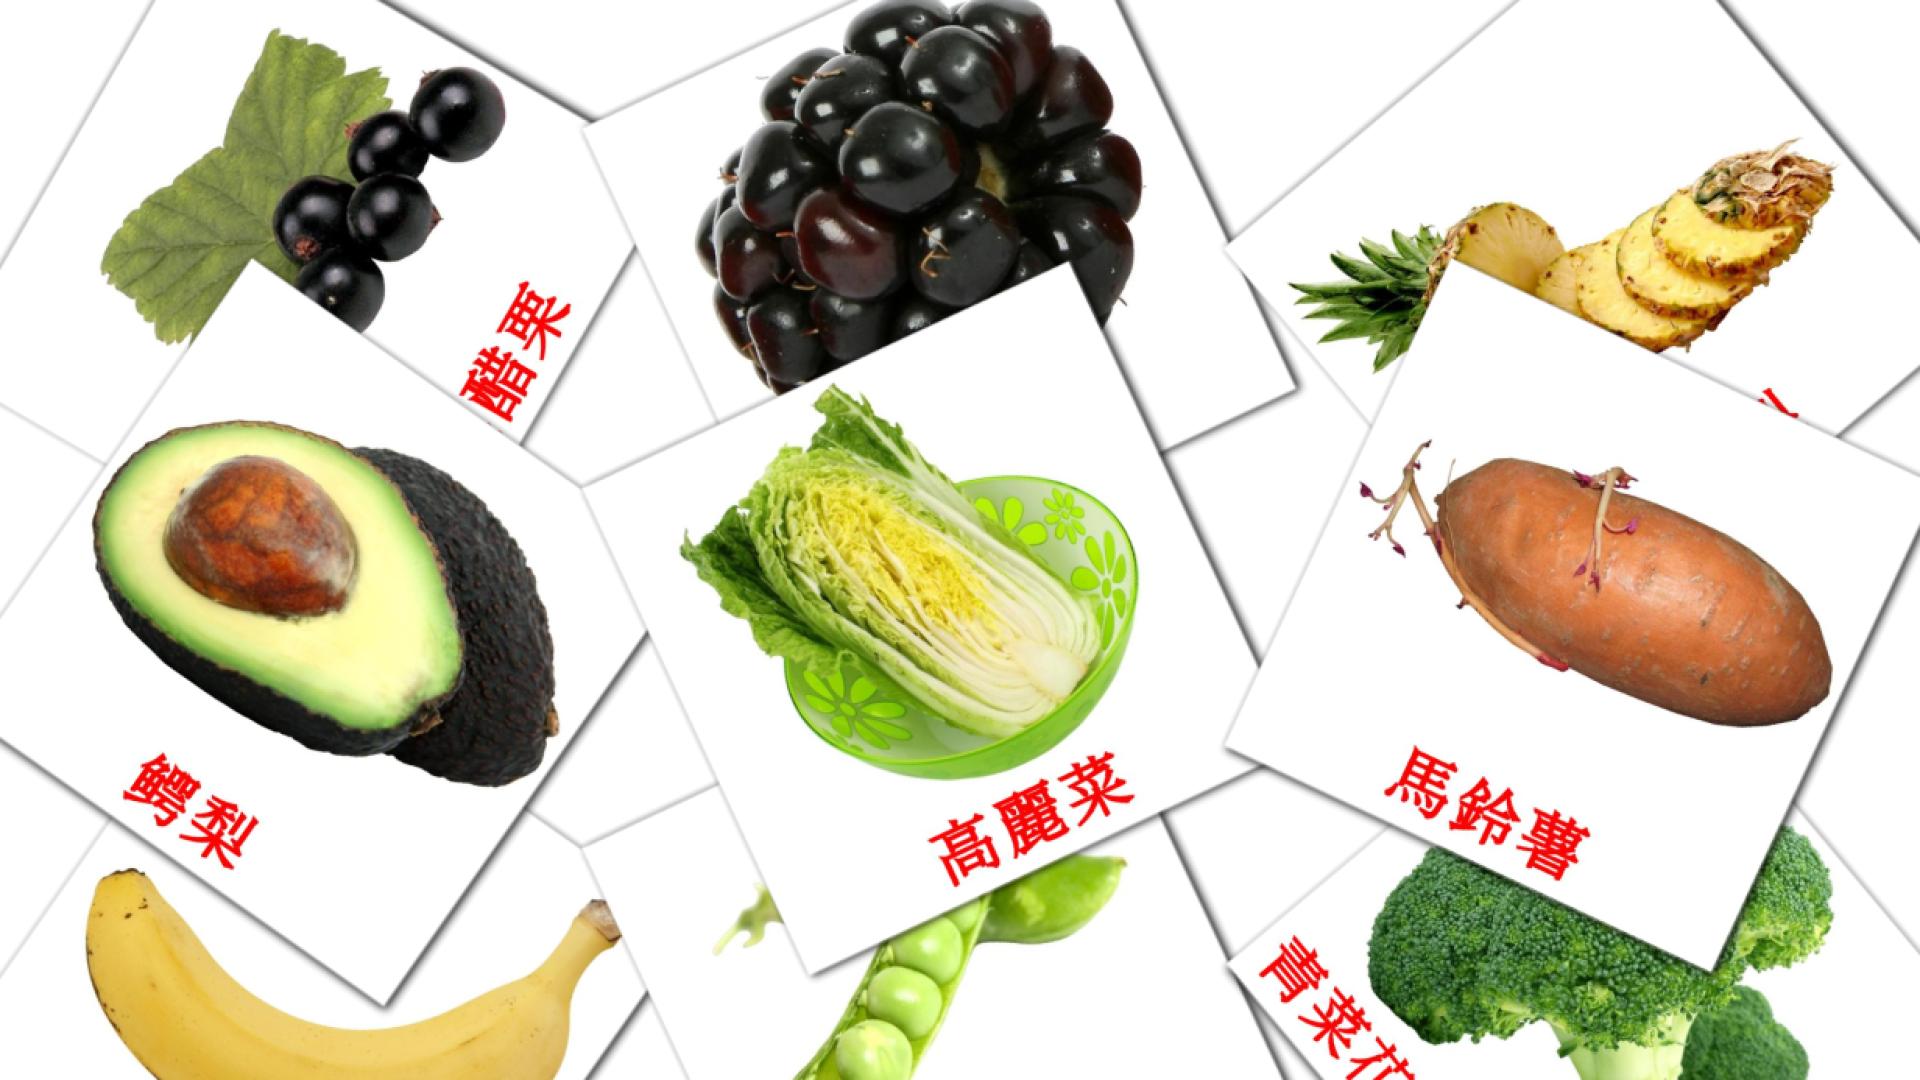 食物 chinese(Traditional) vocabulary flashcards